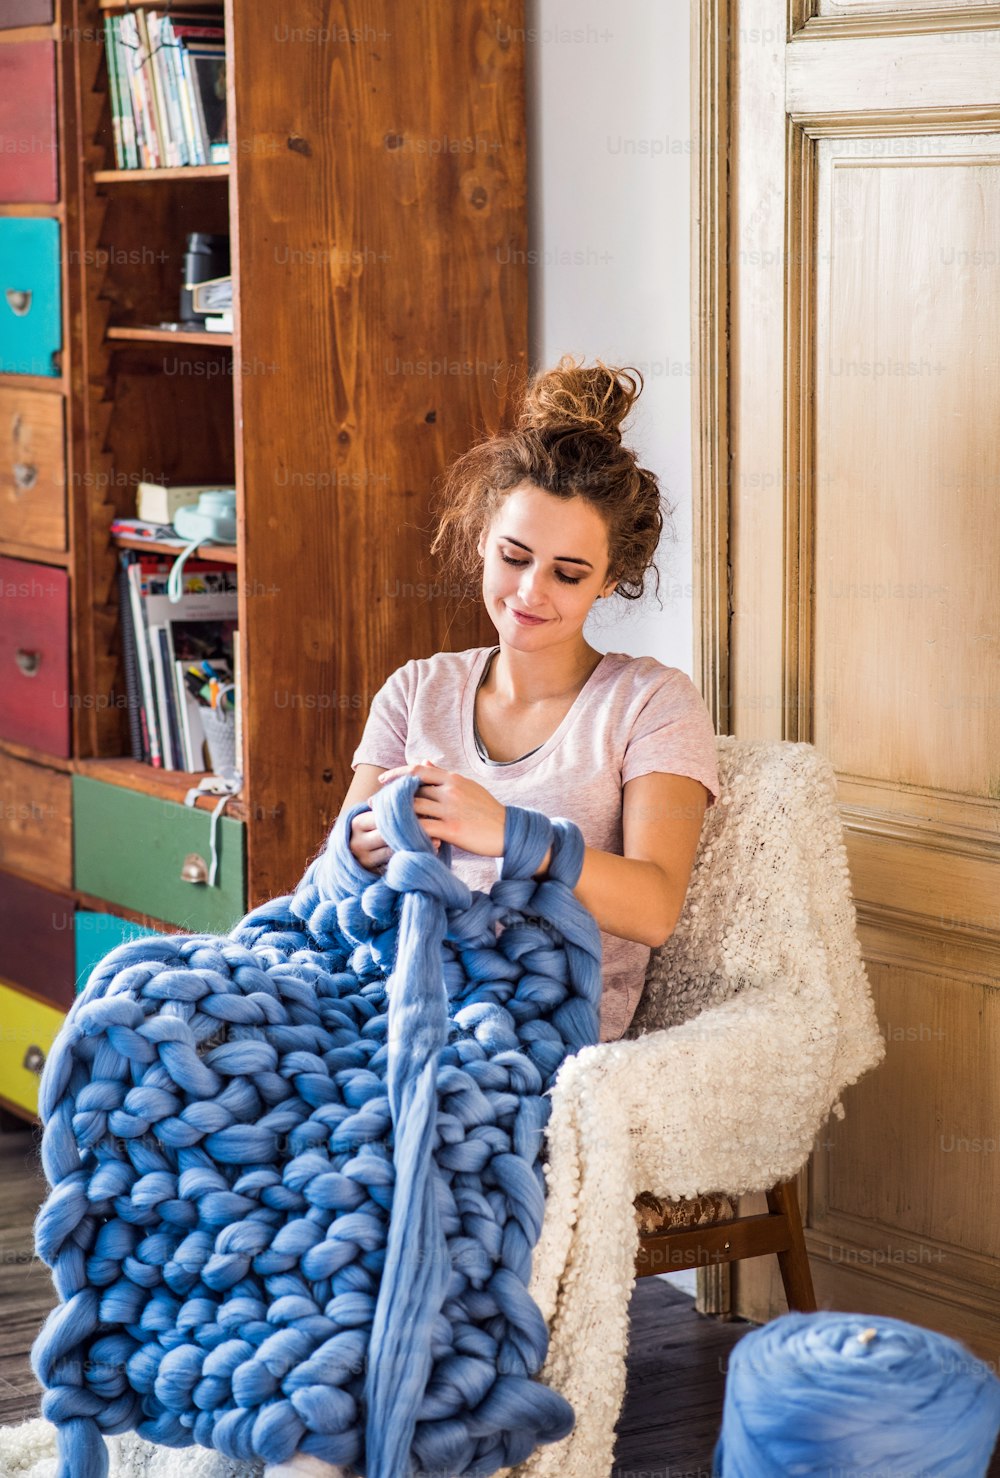 Piccola impresa di una giovane donna. Giovane donna che lavora a maglia una coperta di lana.